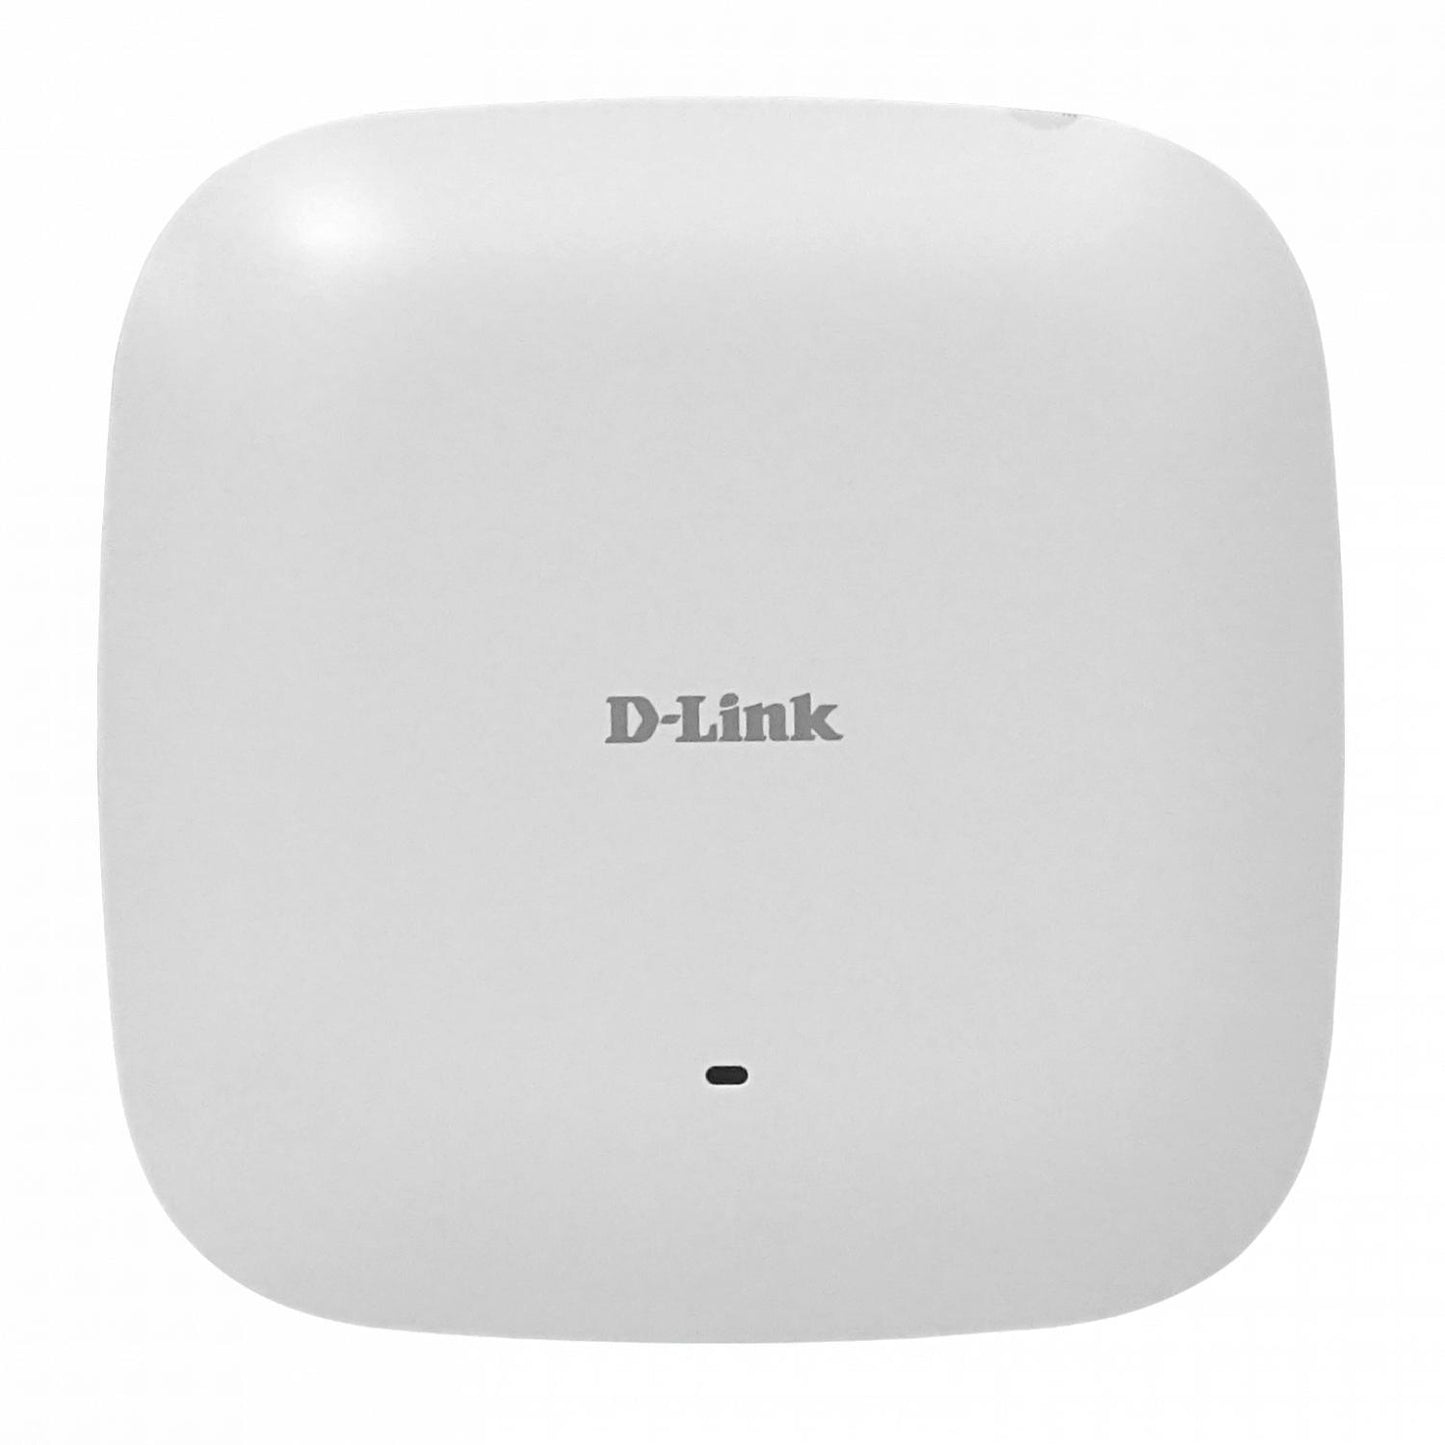 Punto de acceso D-LINK Wave2 AC2200 PoE Clickbox